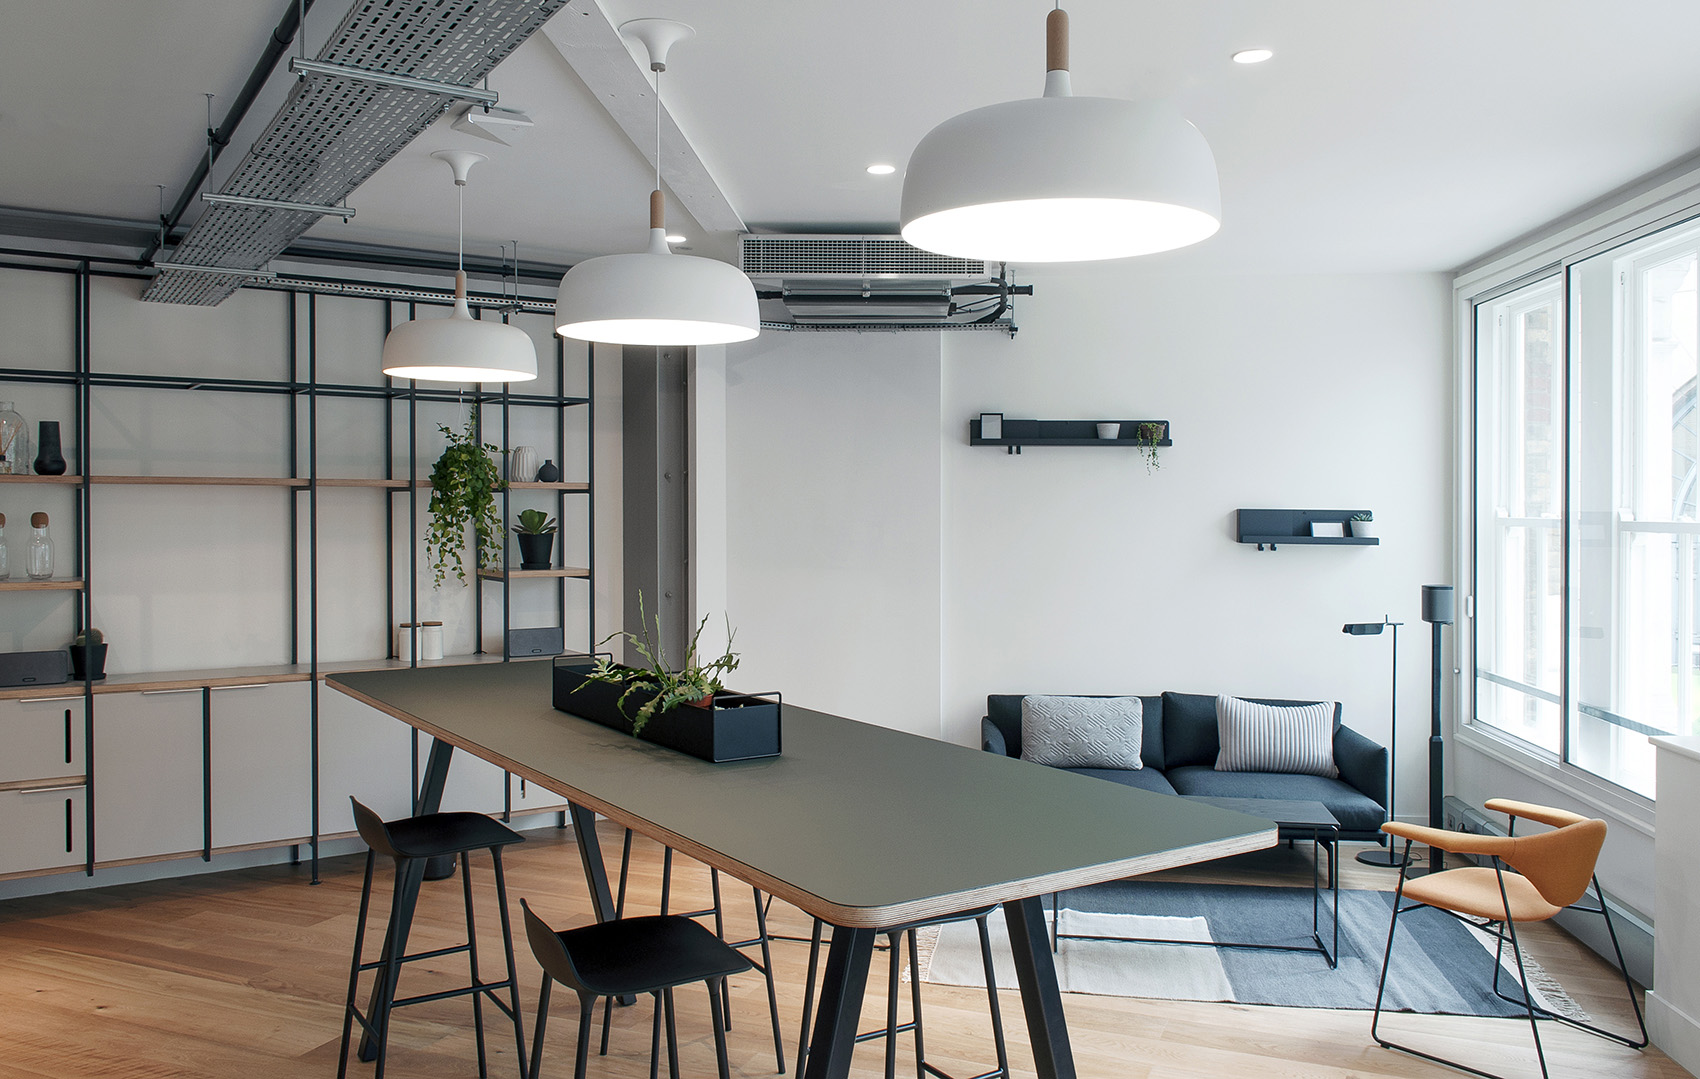 A Peek Inside Appold Studios’ New London Office